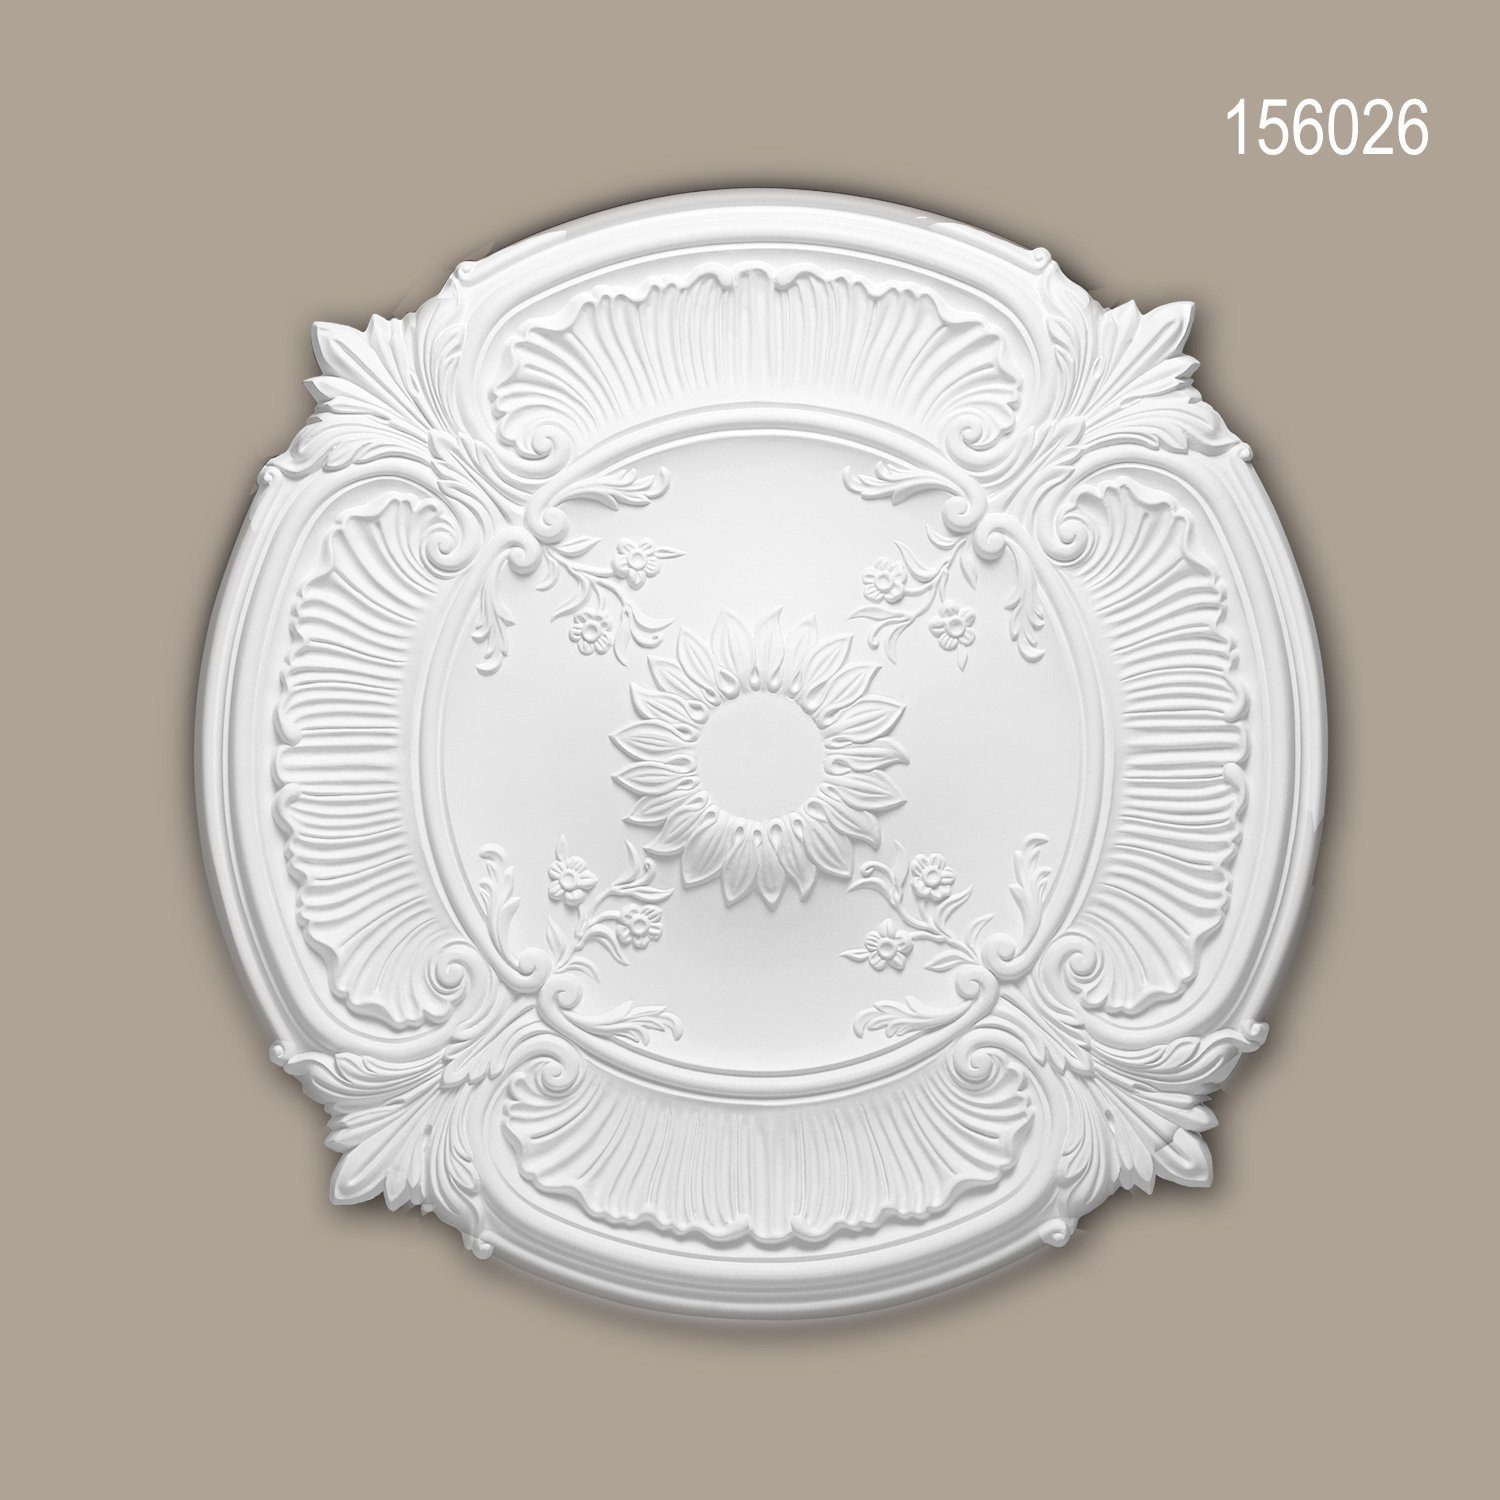 Profhome Decken-Rosette 156026 (Rosette, 1 St., Deckenrosette, Medallion, Stuckrosette, Deckenelement, Zierelement, Durchmesser 77 cm), weiß, vorgrundiert, Stil: Neo-Renaissance